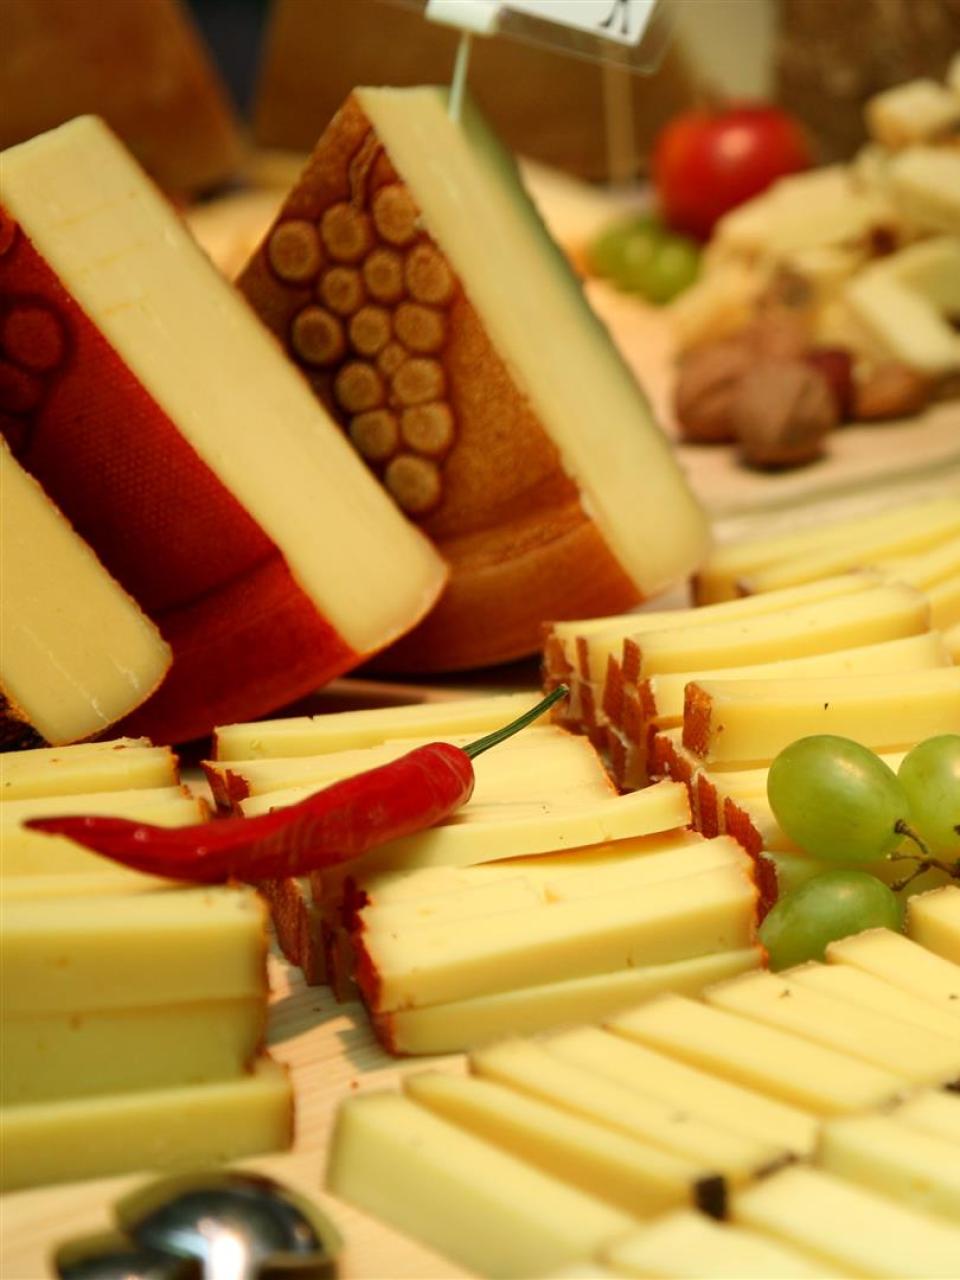 Wissenschaft schützt Schweizer Käse